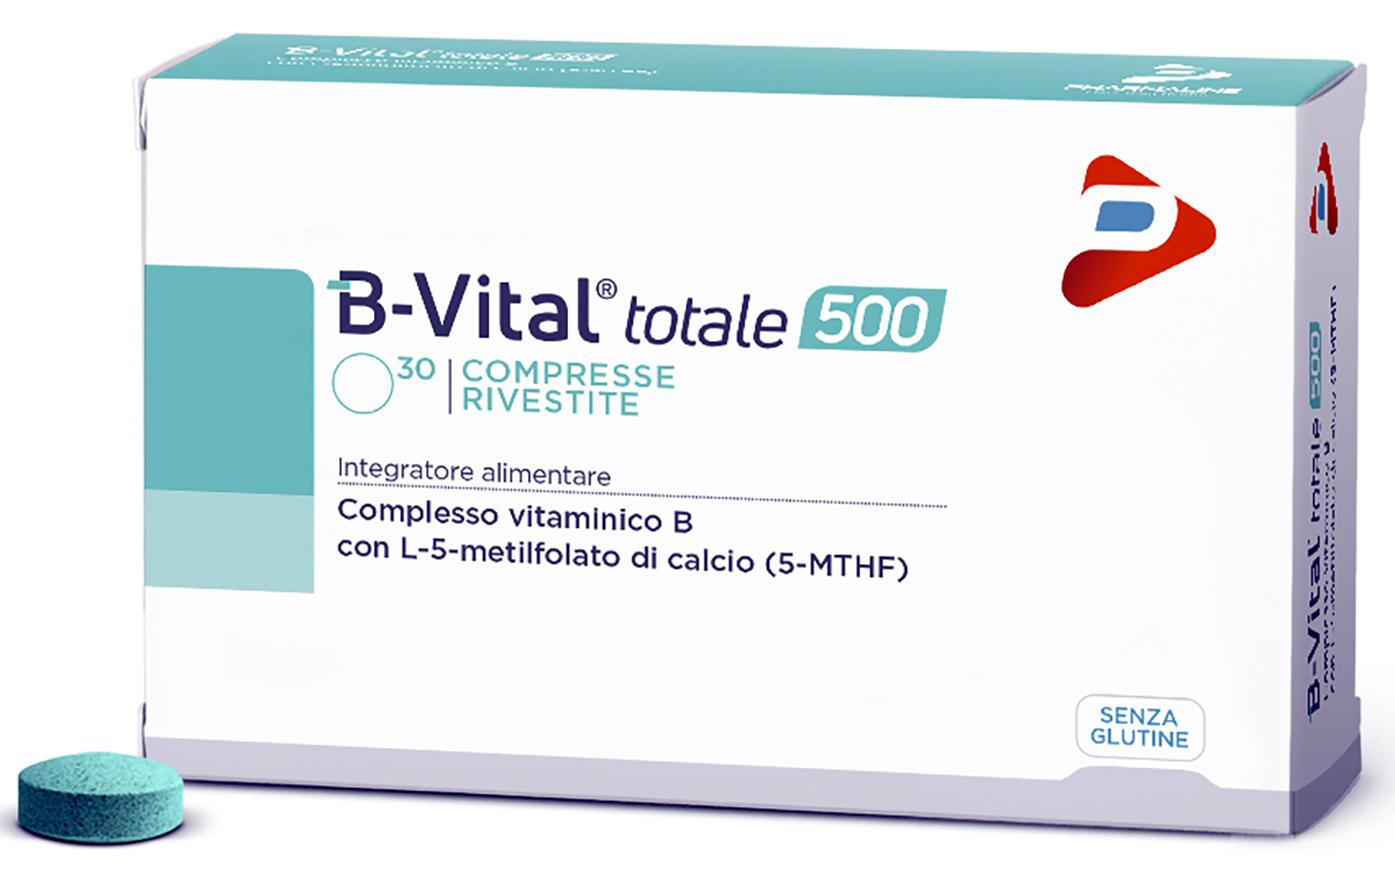 B-VITAL totale®500